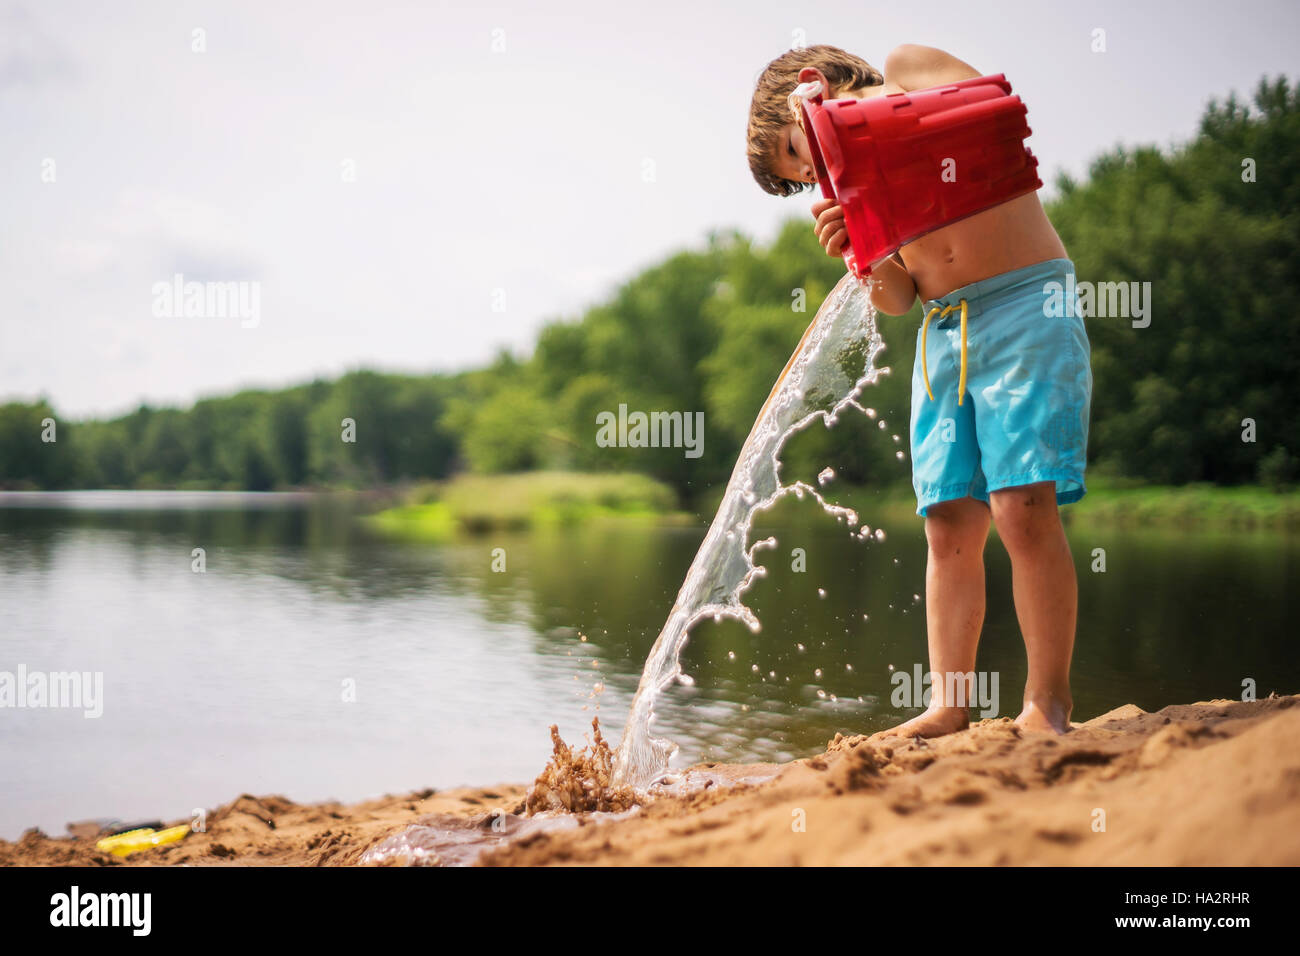 Boy vaciando un balde de agua en la playa Foto de stock